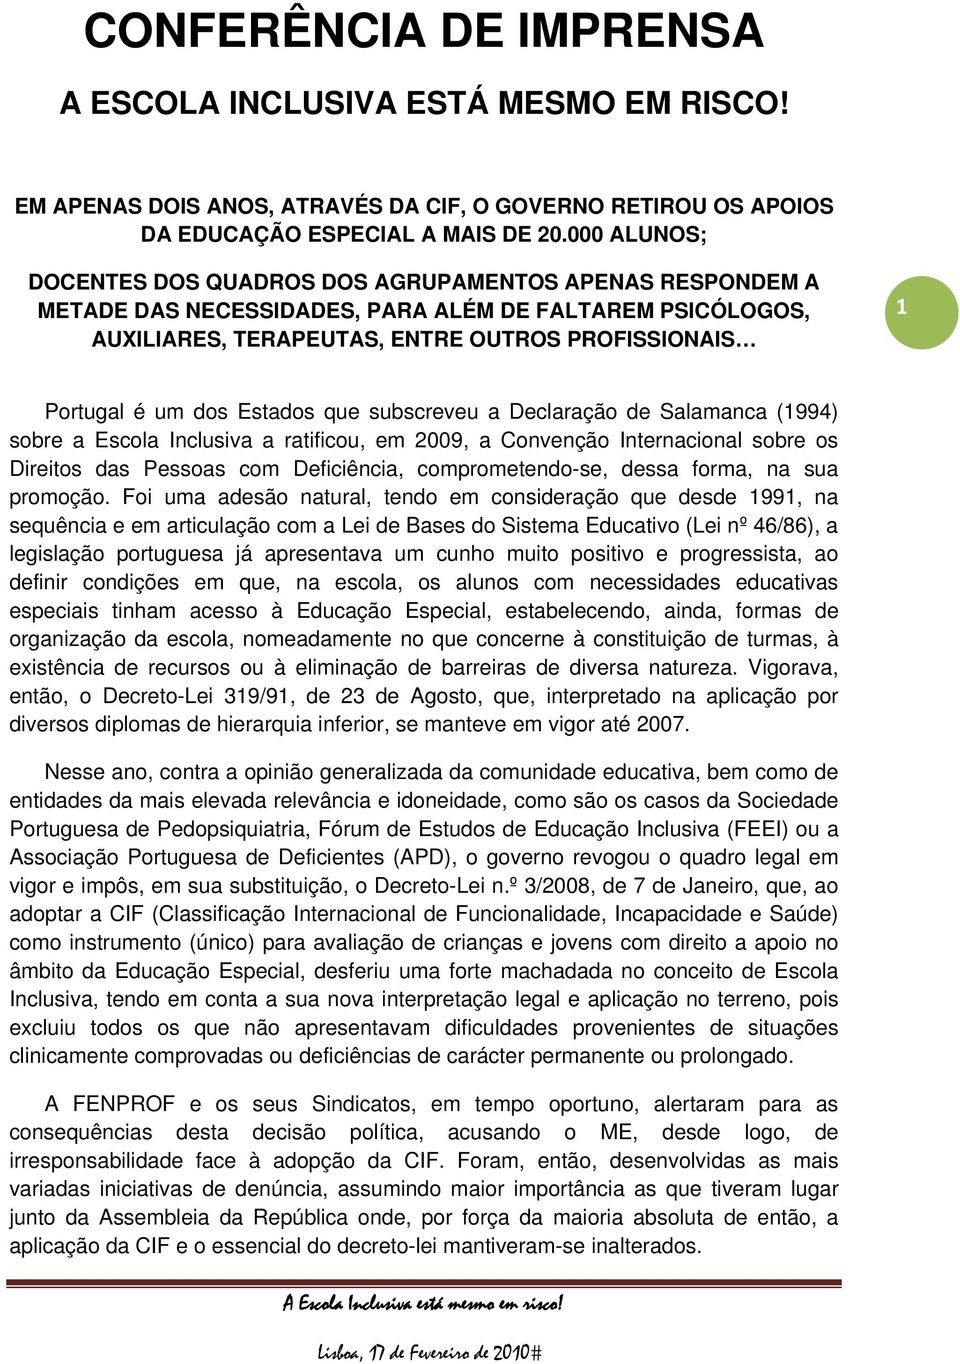 Estados que subscreveu a Declaração de Salamanca (1994) sobre a Escola Inclusiva a ratificou, em 2009, a Convenção Internacional sobre os Direitos das Pessoas com Deficiência, comprometendo-se, dessa